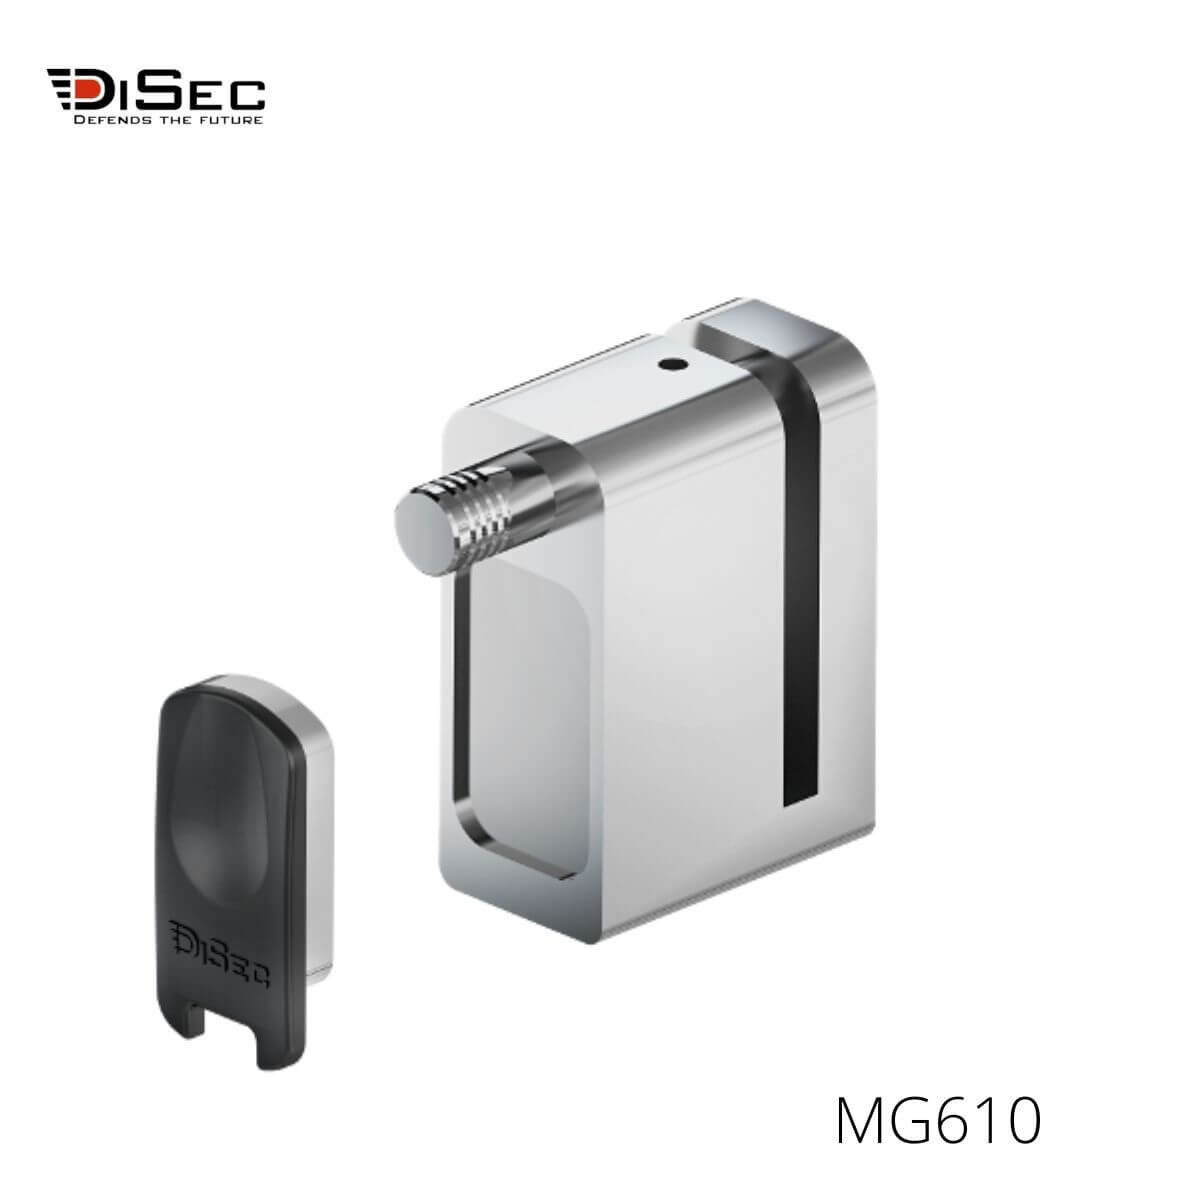 Candado magnético disco freno moto MG610 DISEC